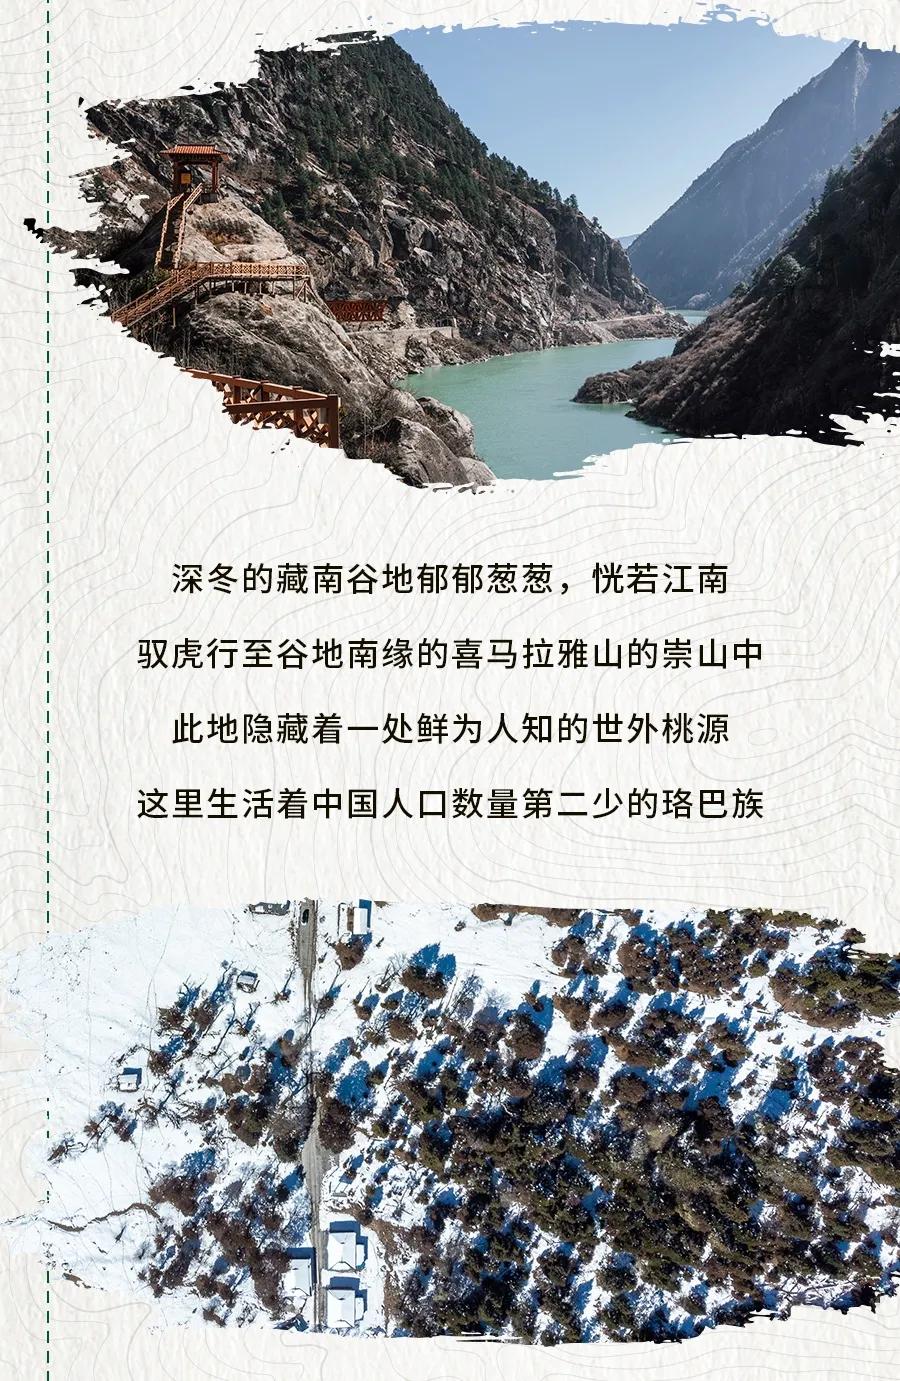 #發現路虎星級路線# 西藏的美 大約在冬季